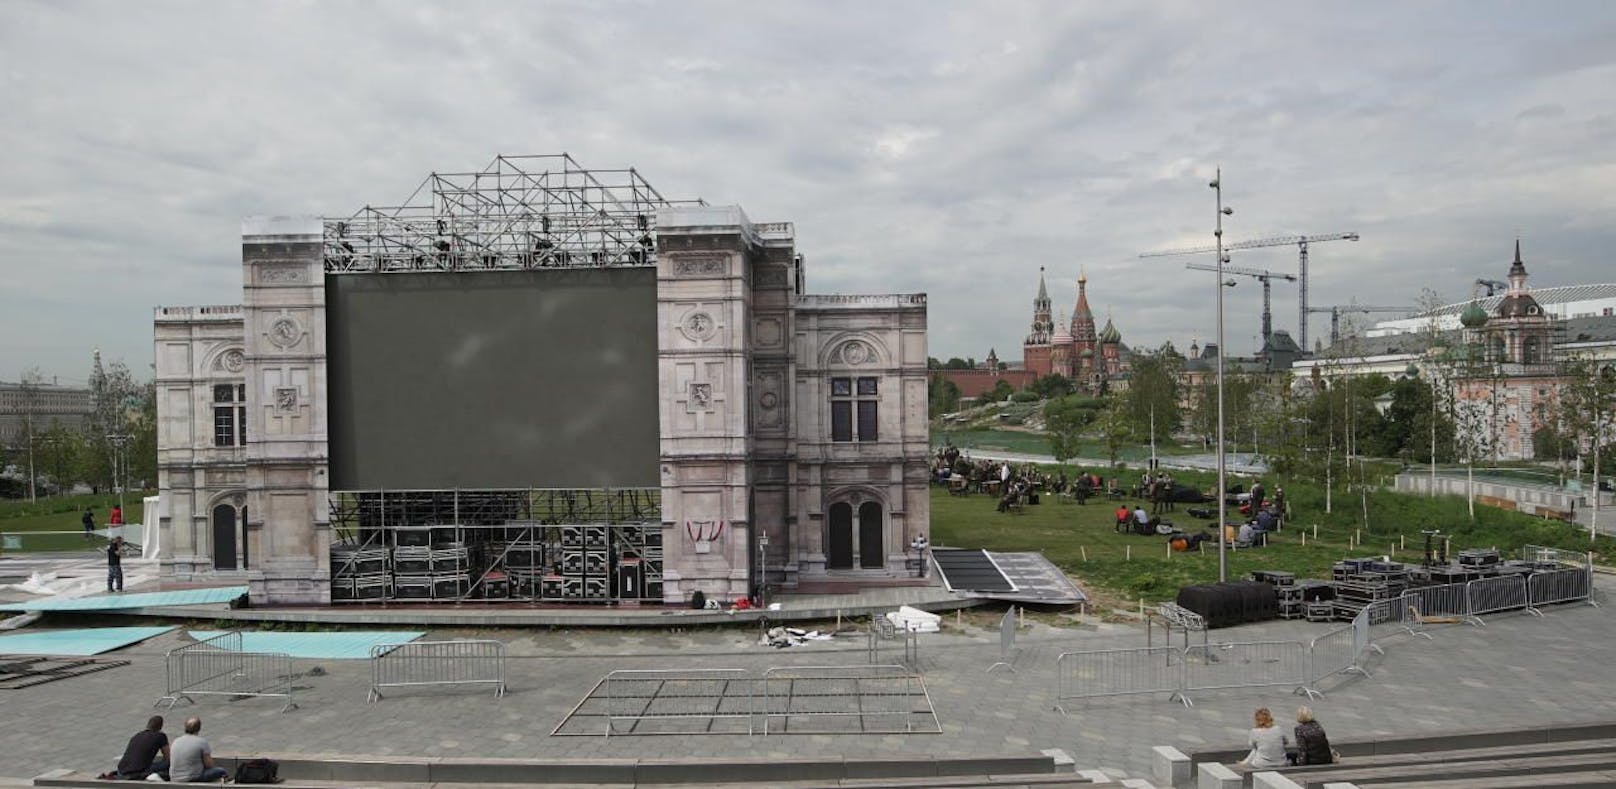 Public Viewing in Moskau anlässlich 150 Jahre Wiener Staatsoper